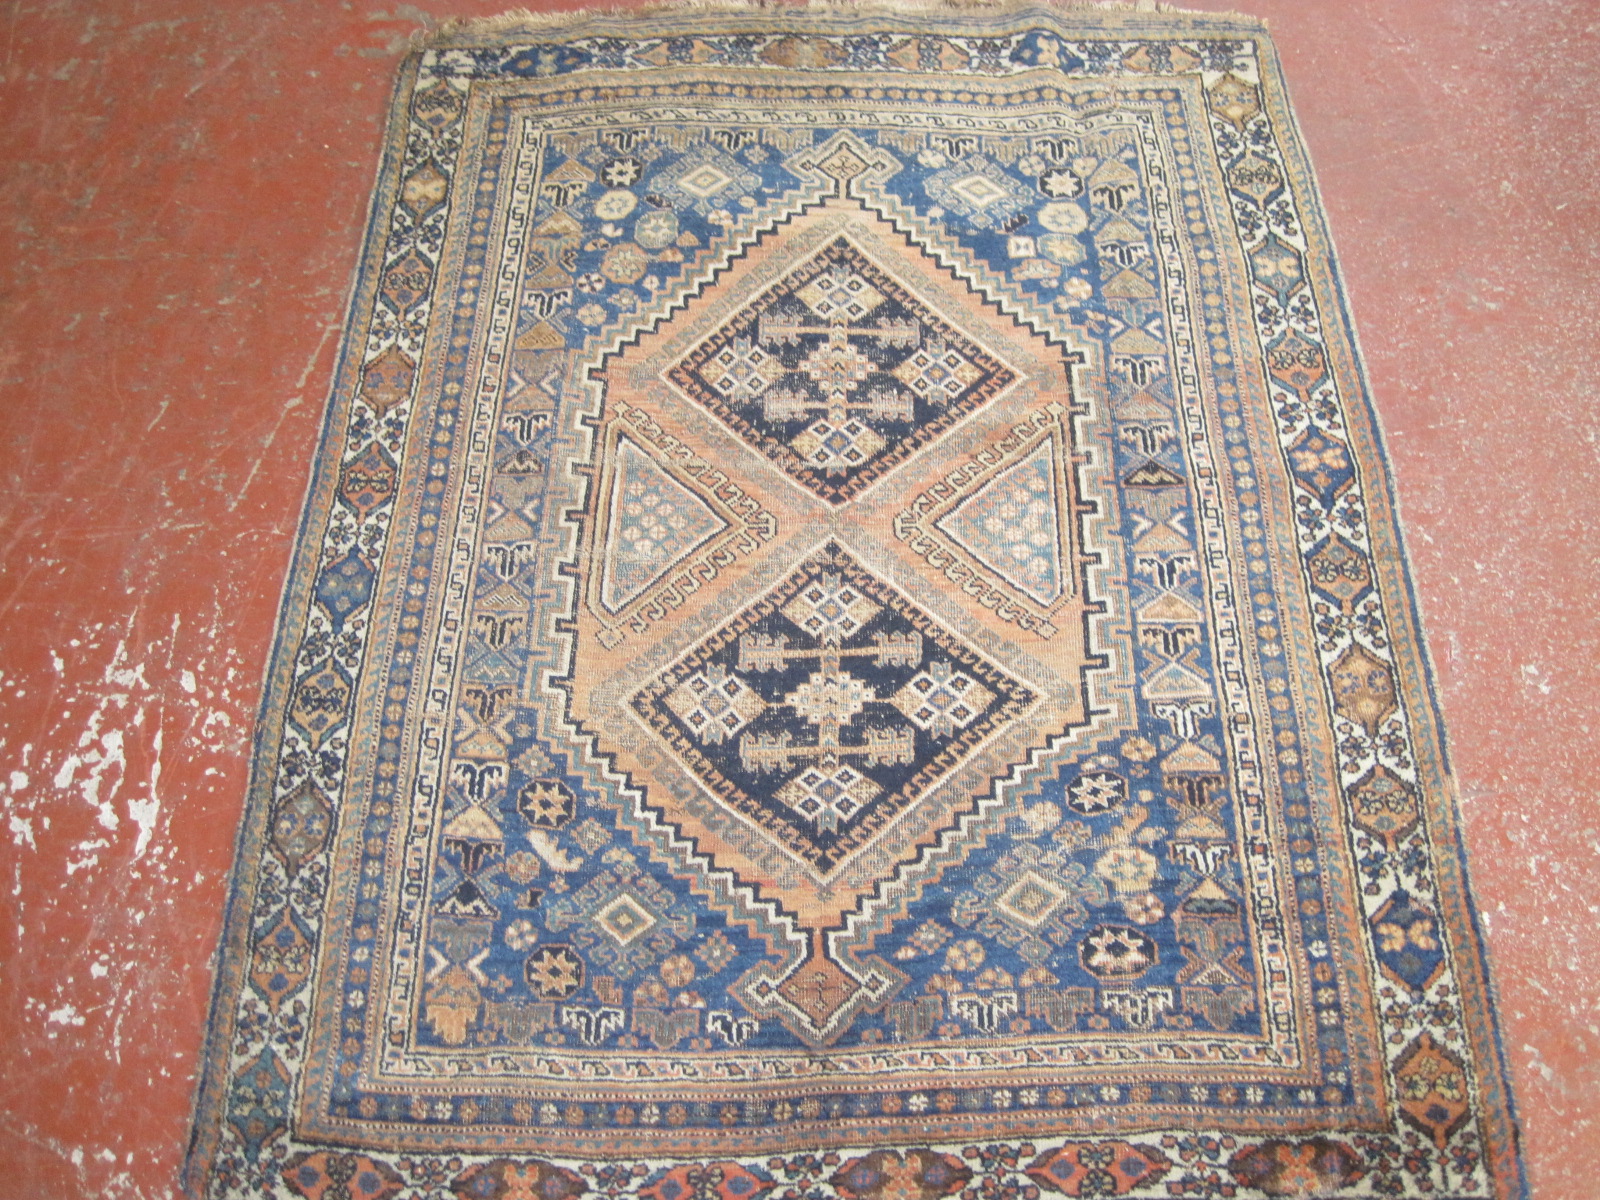 A Persian Afshar rug 180 x 130cm